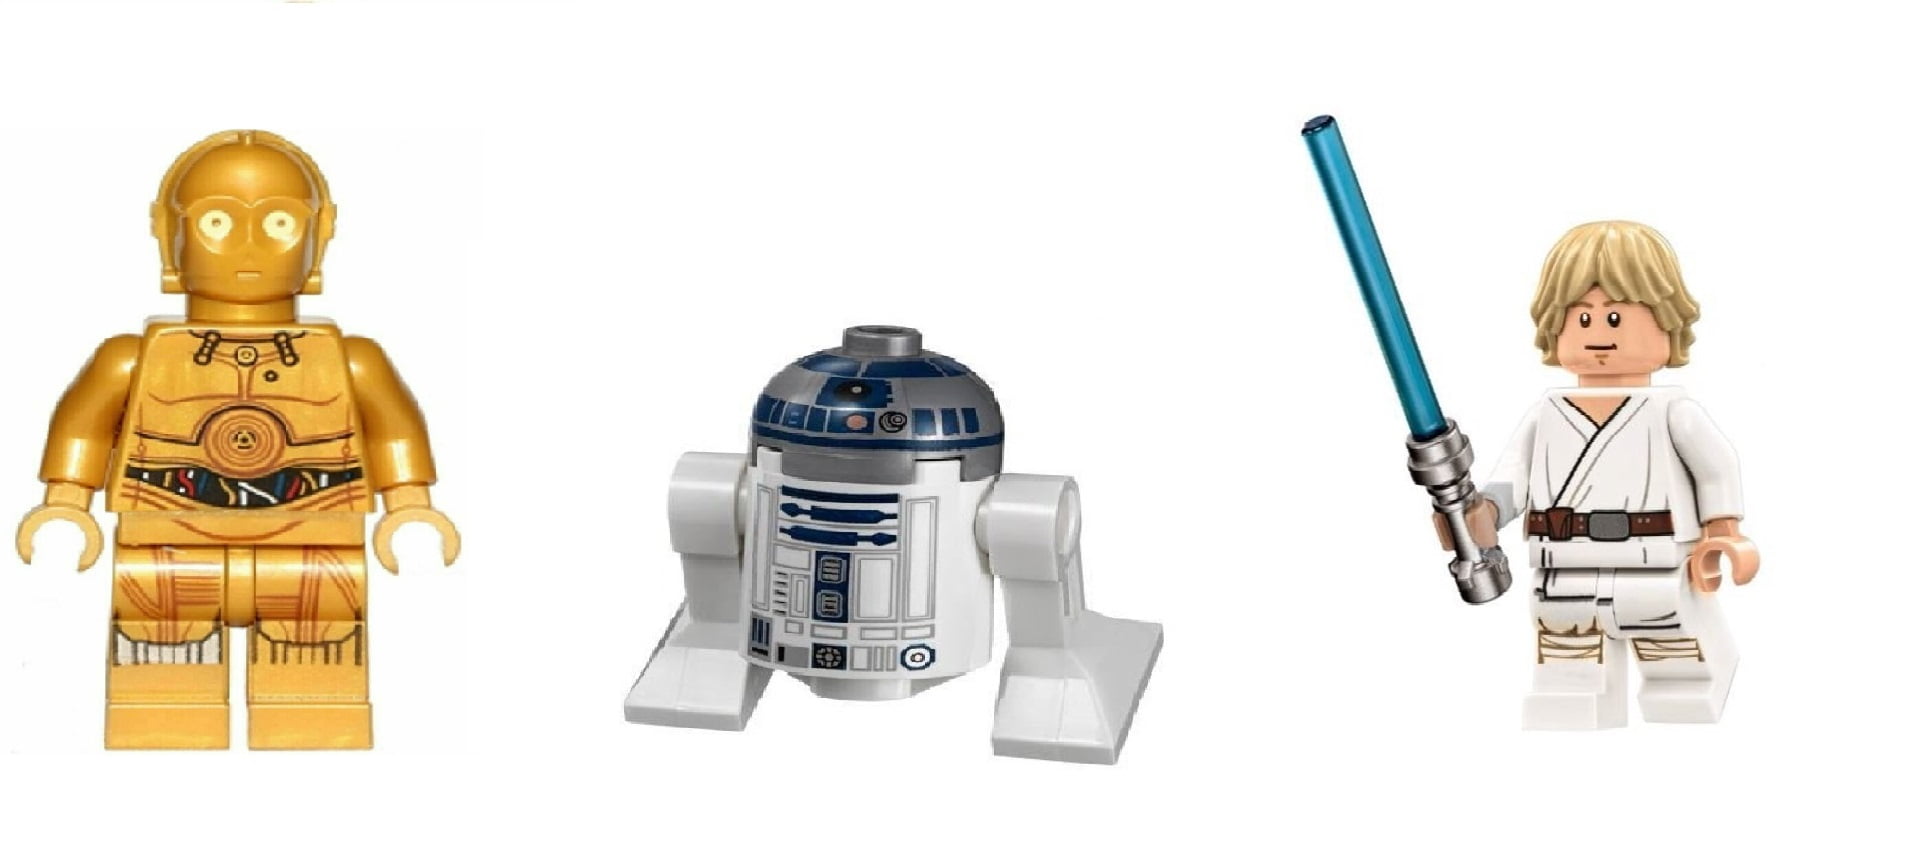 Bliv overrasket tre Lære udenad LEGO 75159 Death Star Luke Skywalker, R2-D2, and C-3PO Minifigures -  Walmart.com